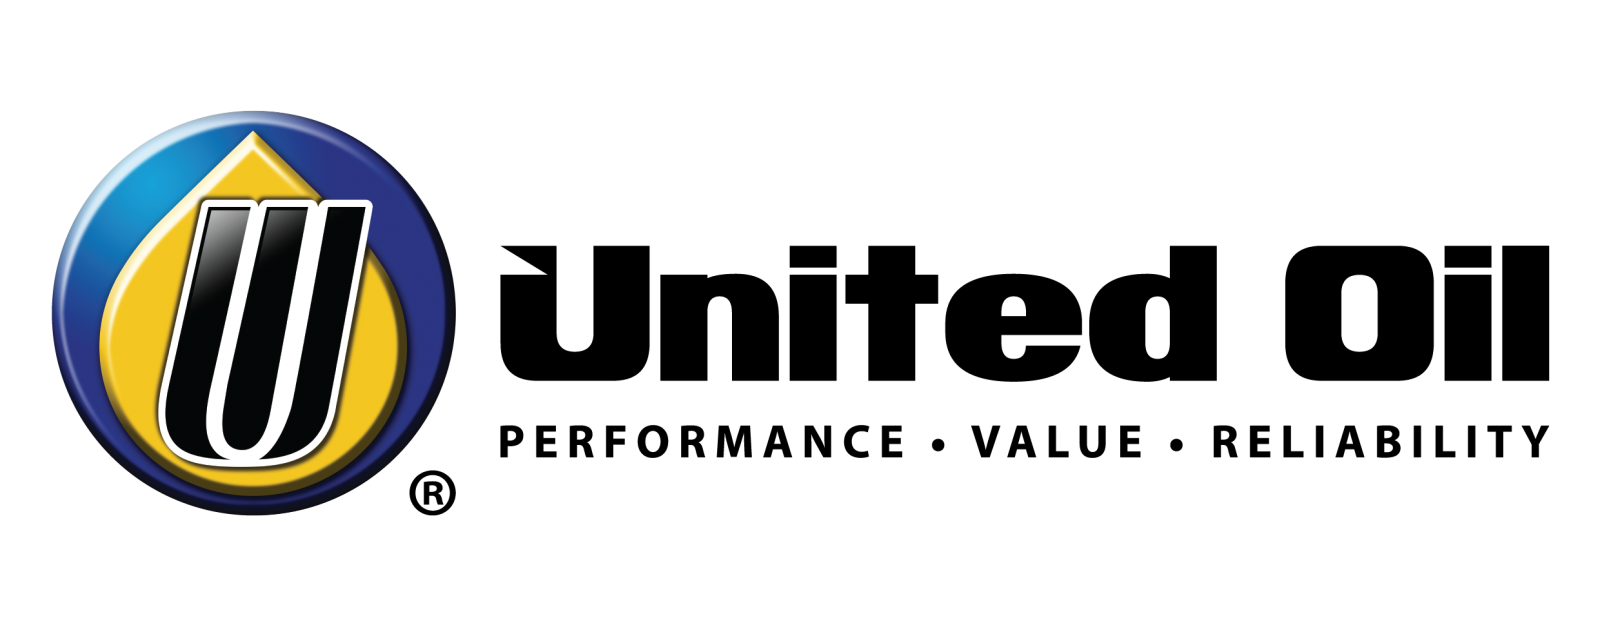 logo united oil